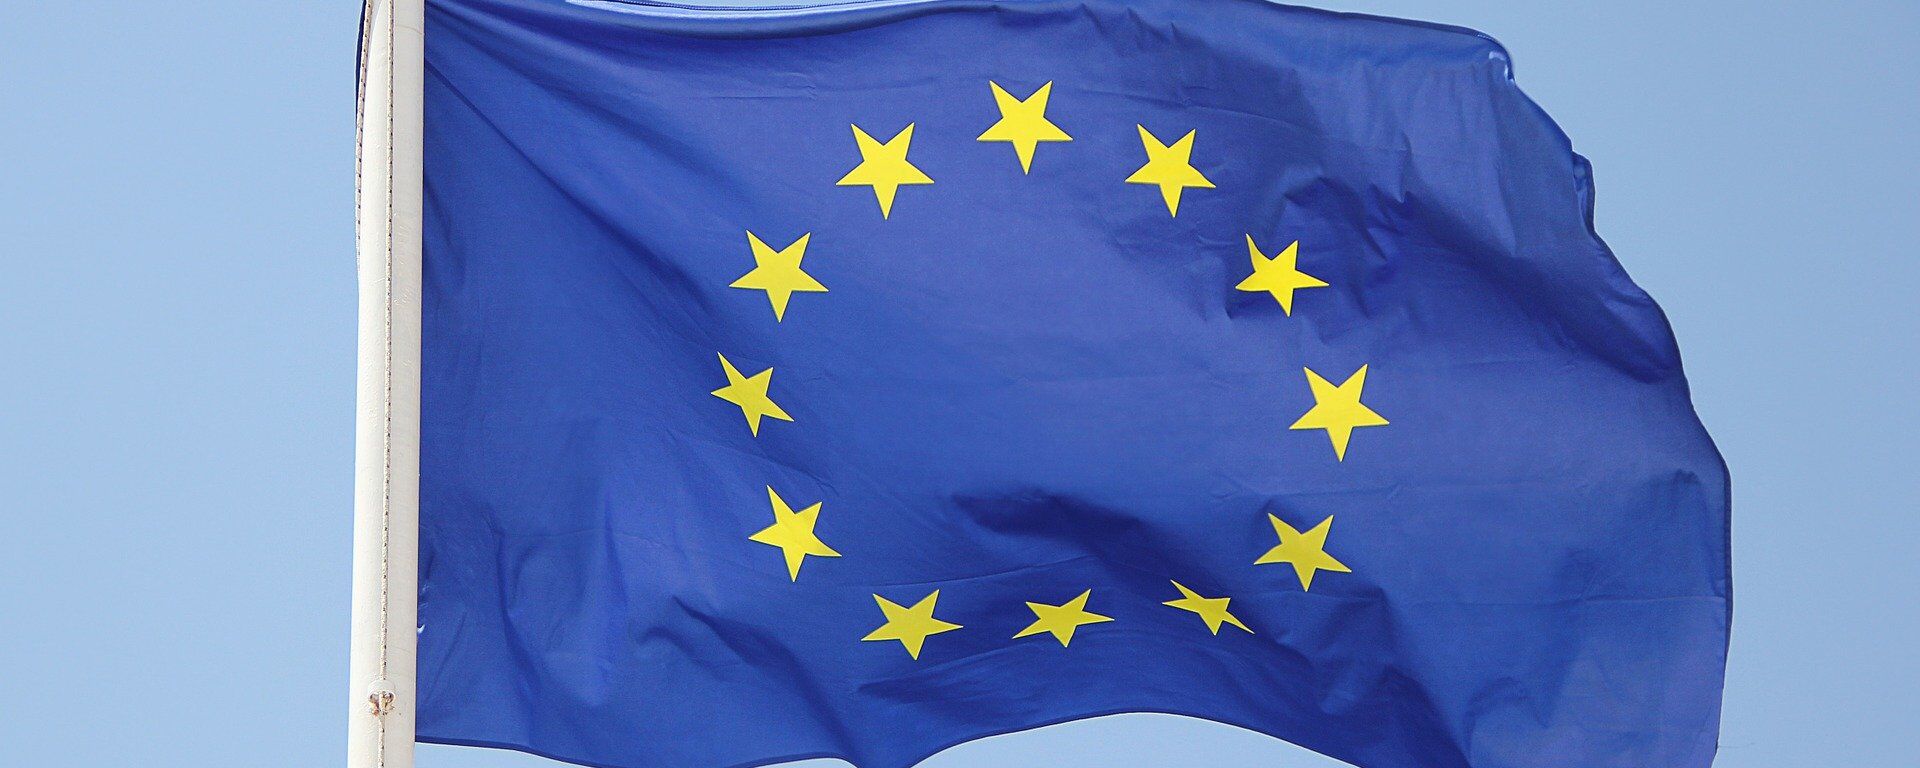 Bandera de la UE - Sputnik Mundo, 1920, 15.02.2021